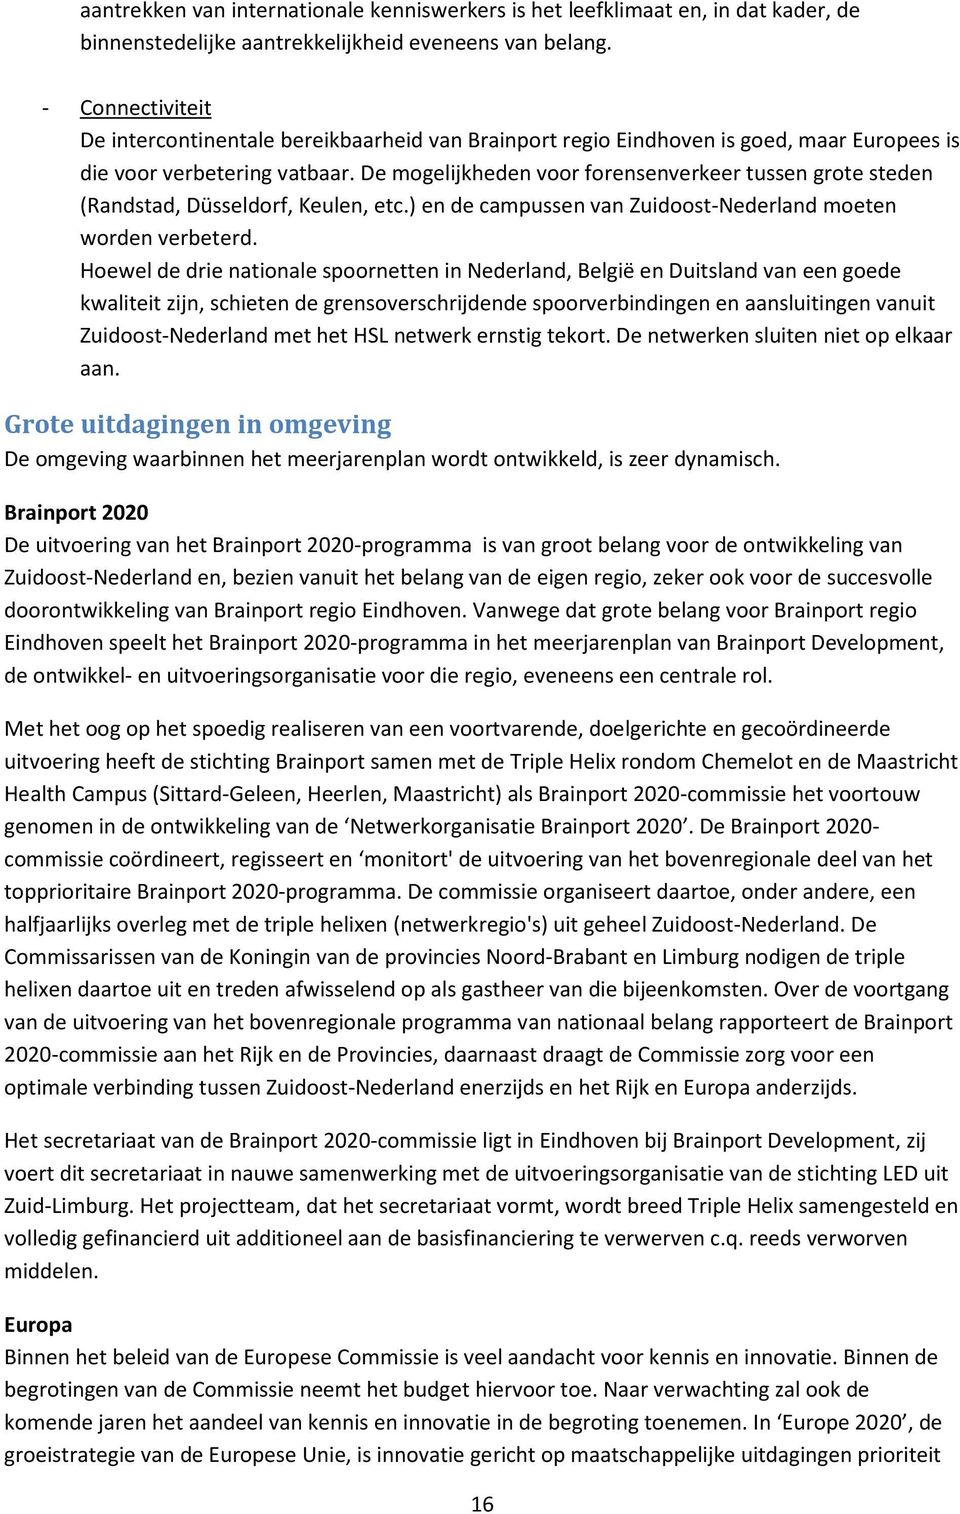 De mogelijkheden voor forensenverkeer tussen grote steden (Randstad, Düsseldorf, Keulen, etc.) en de campussen van Zuidoost-Nederland moeten worden verbeterd.